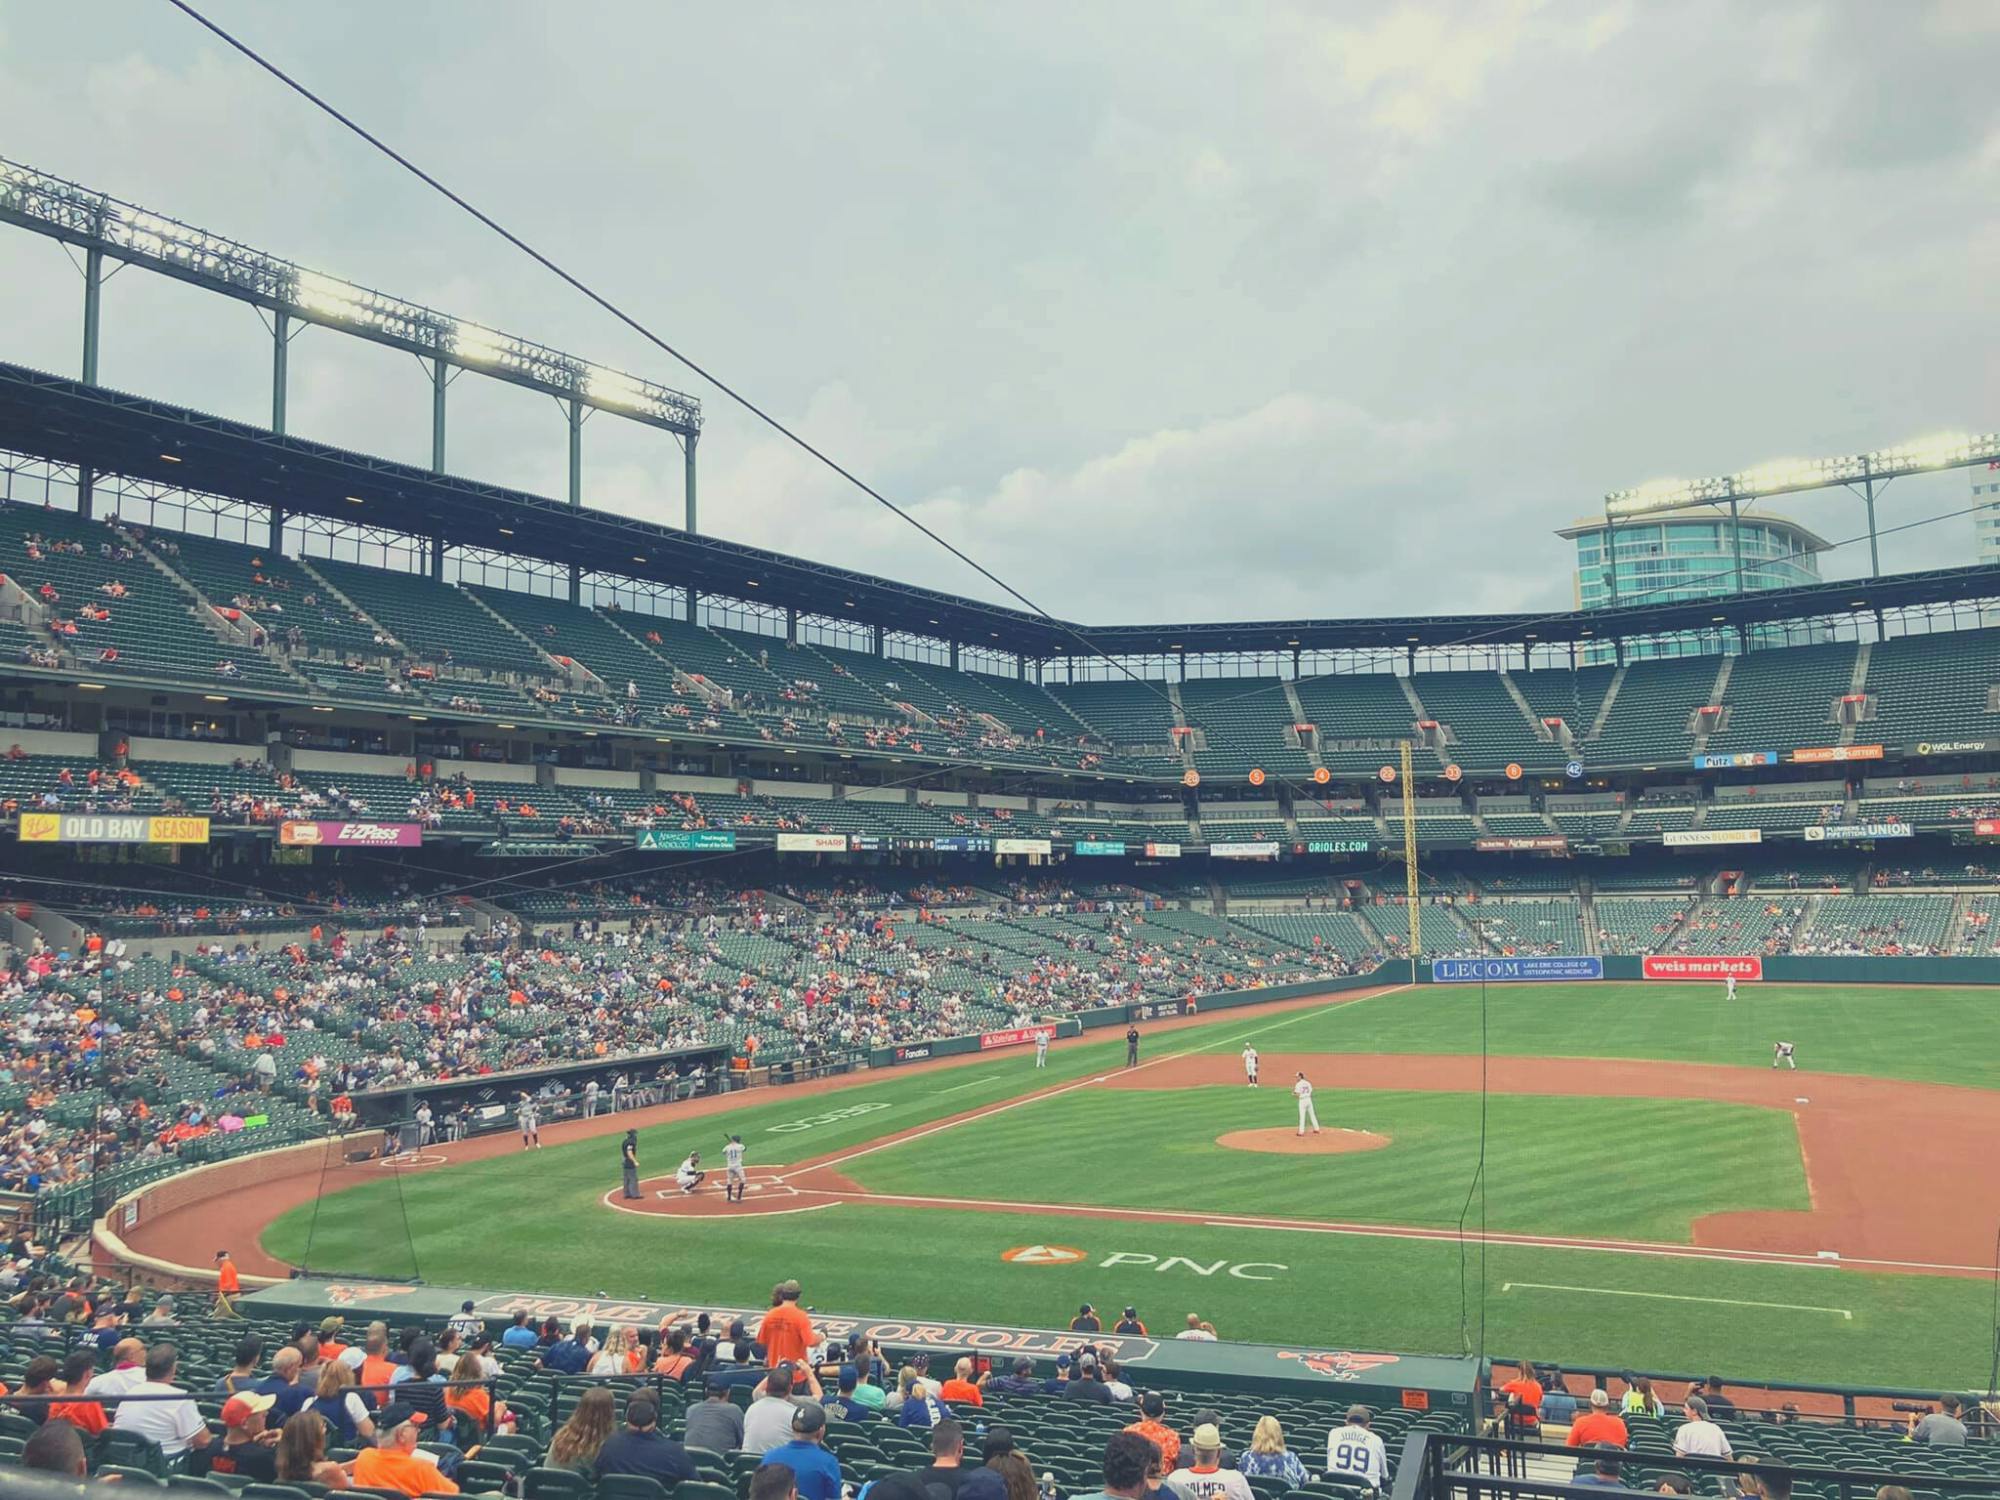 Biglietti per la partita di baseball dei Baltimore Orioles all'Oriole Park